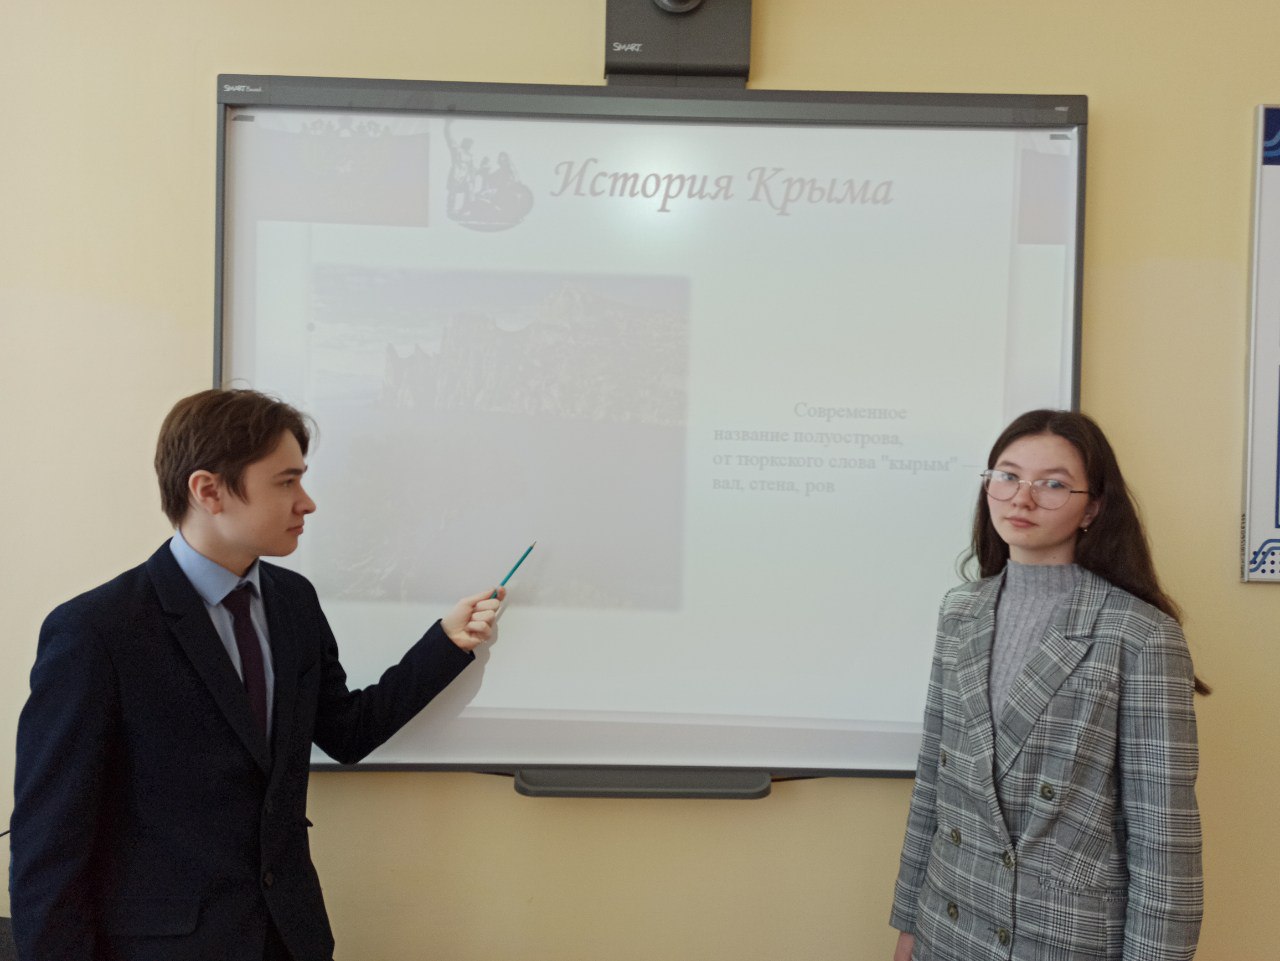 Открытые уроки, приуроченные к годовщине воссоединения Крыма, Cевастополя и России